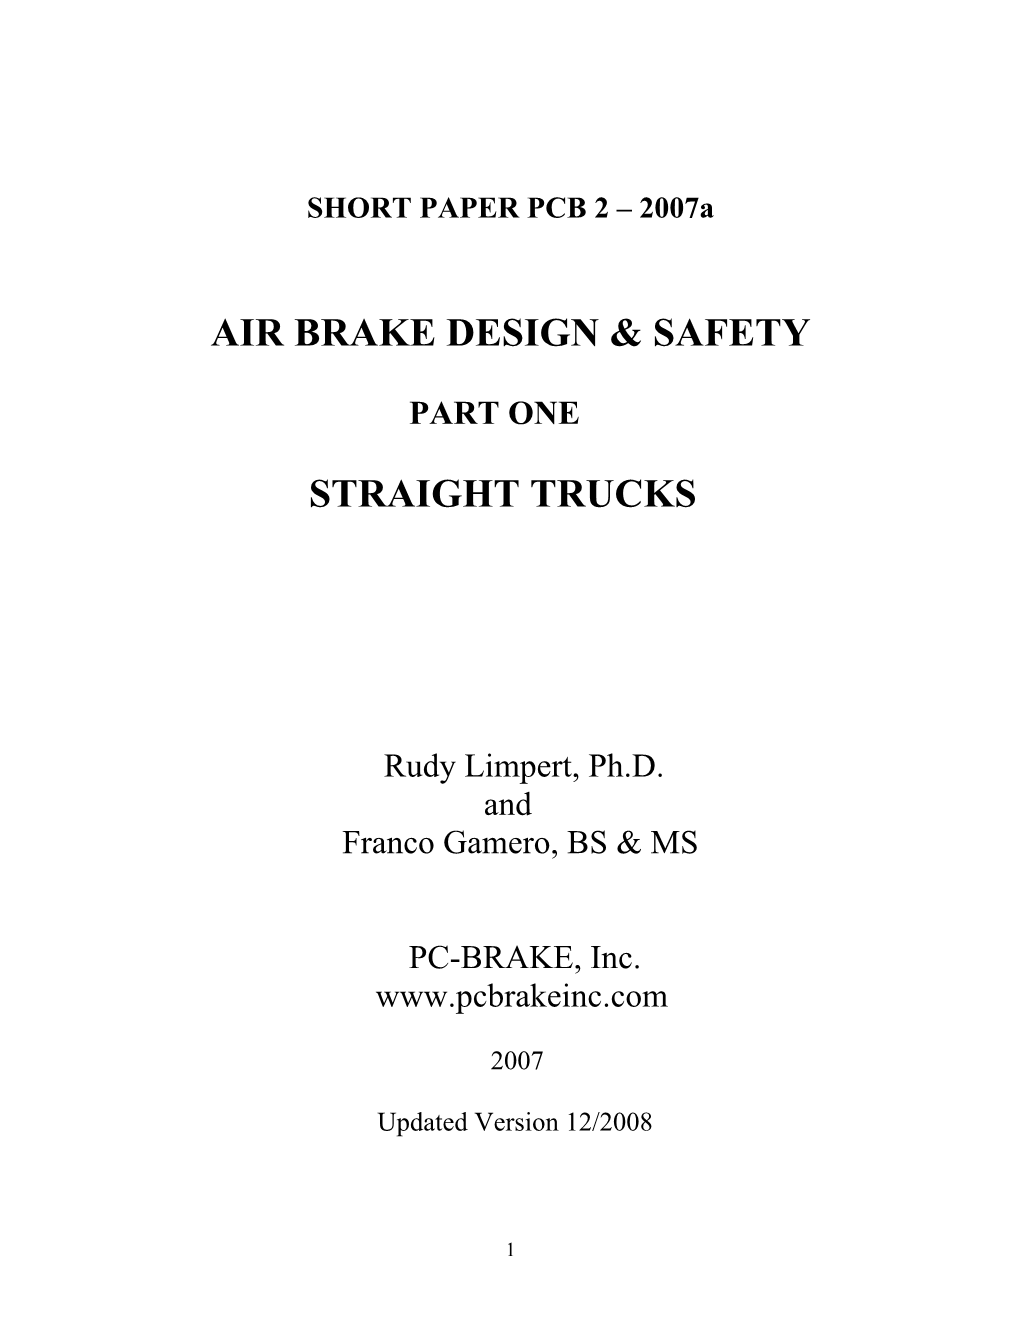 Air Brake Design & Safety Straight Trucks